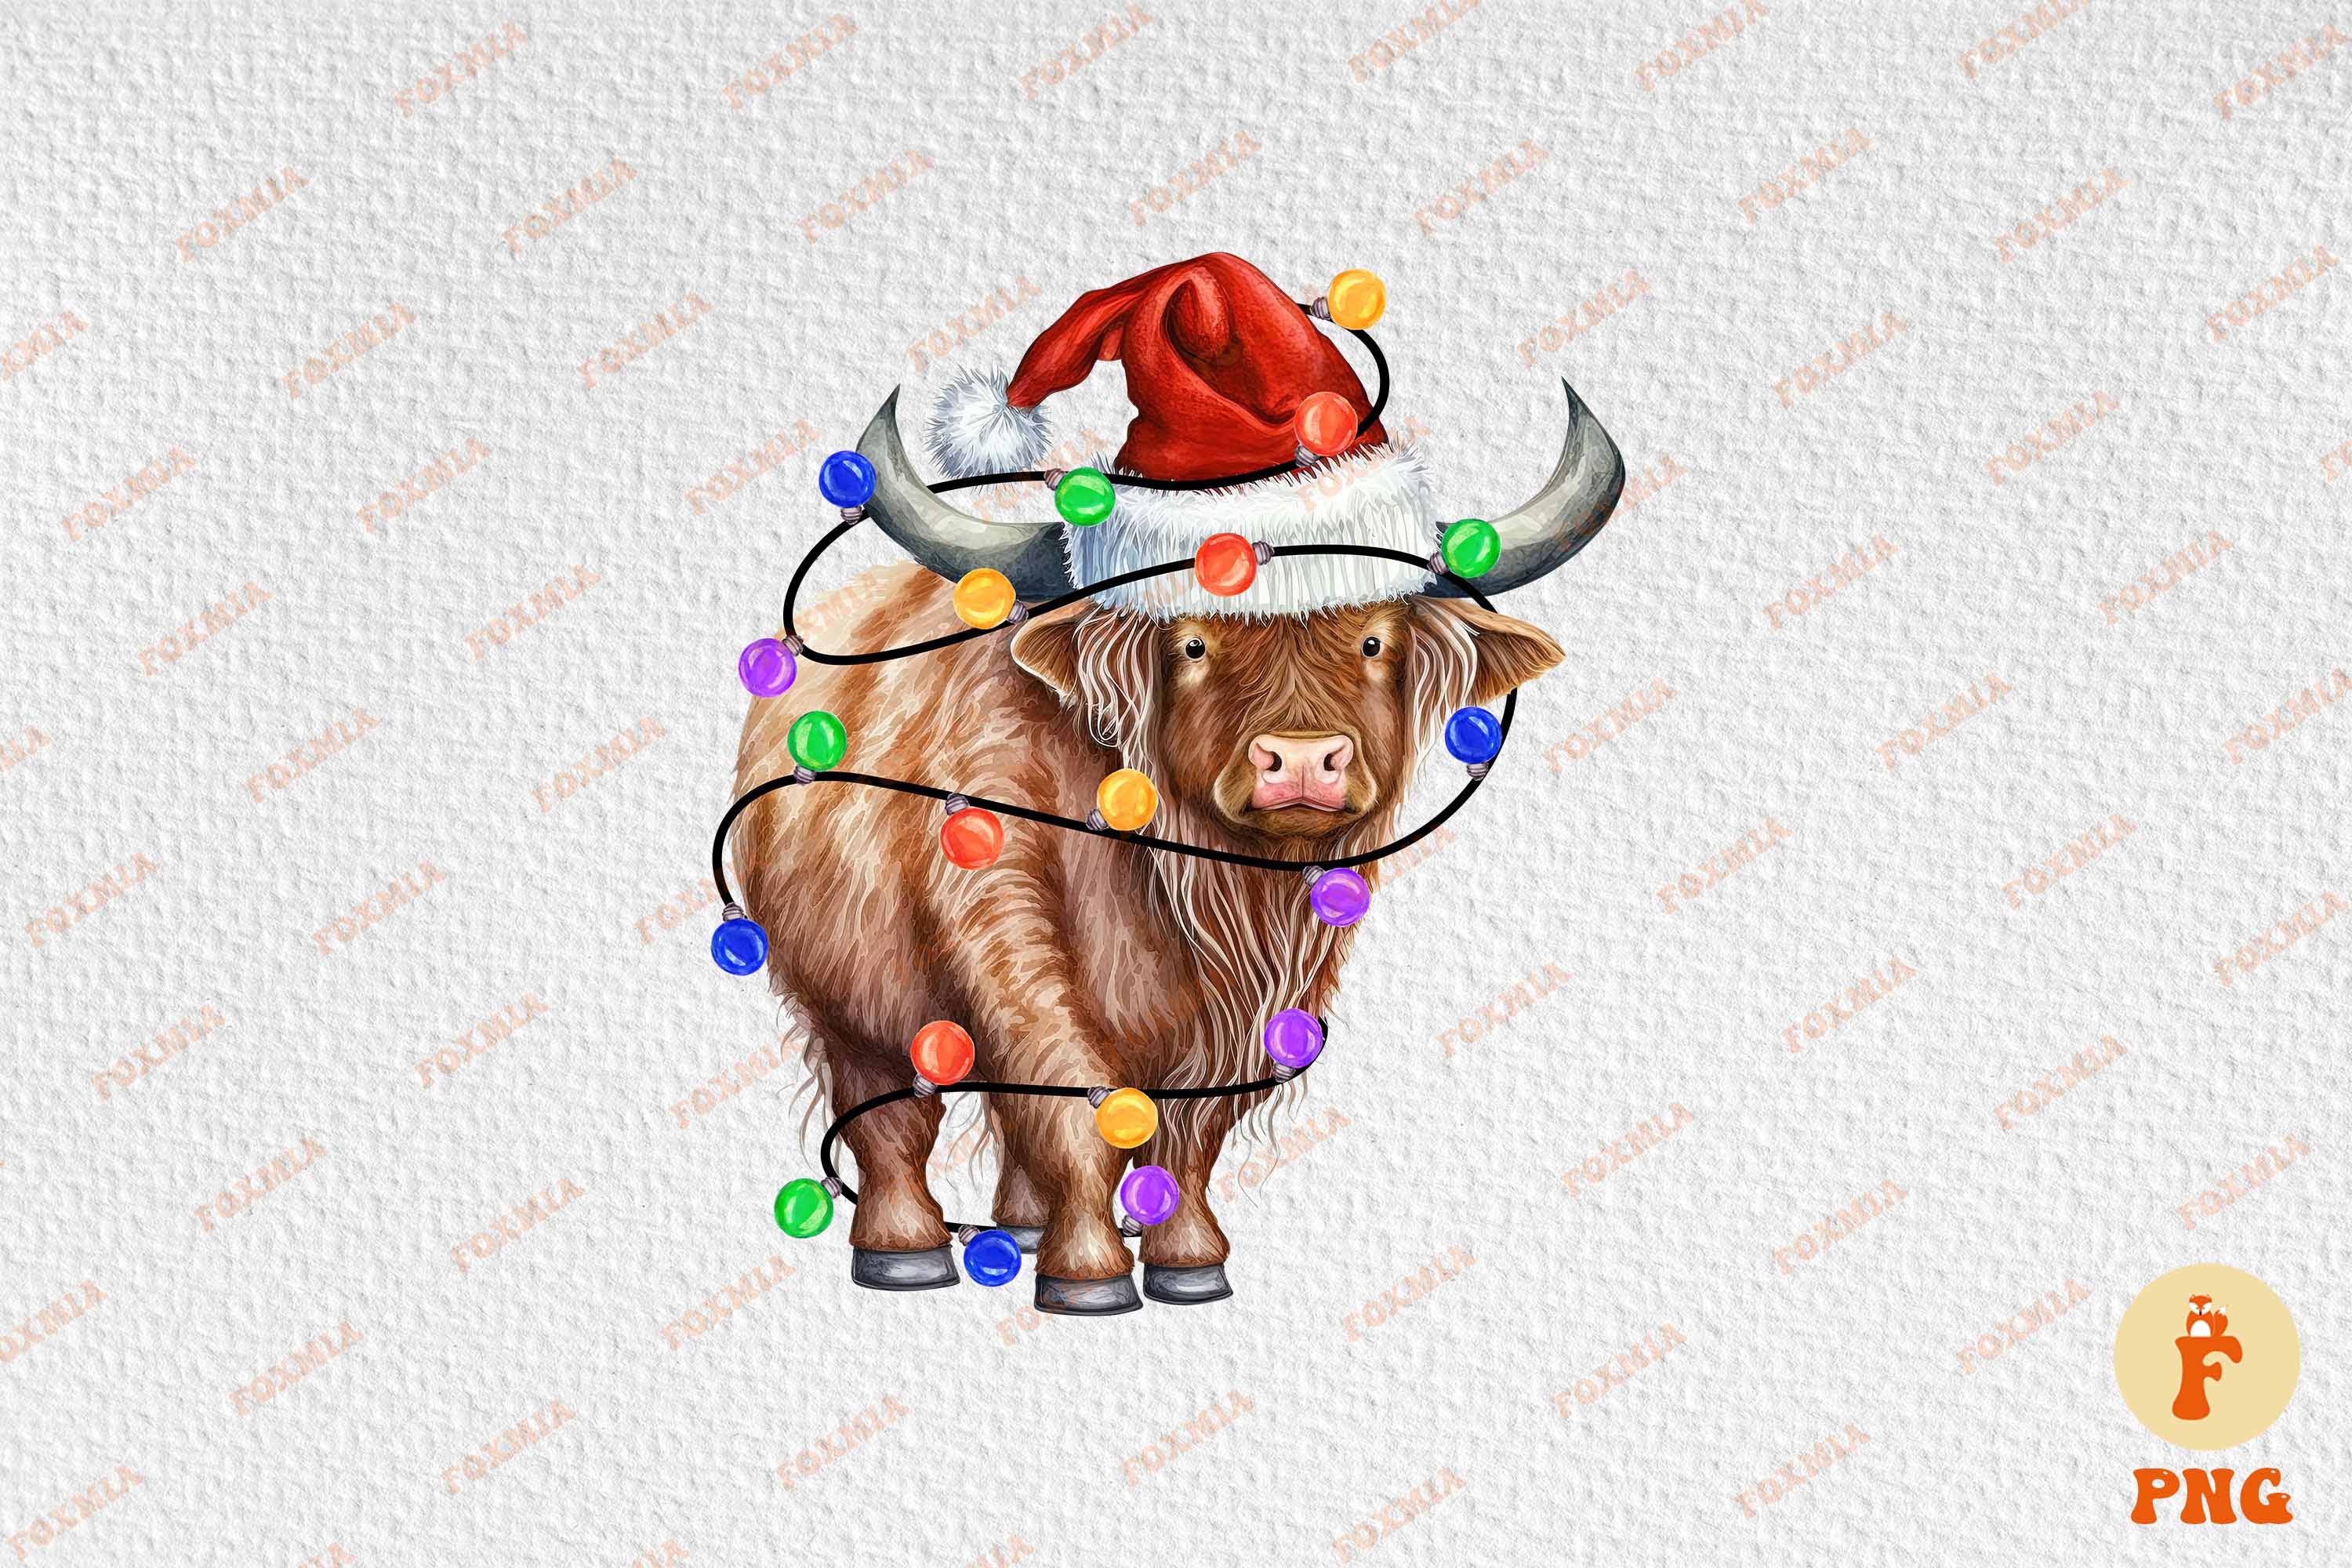 Irresistible image of a buffalo in a santa hat.